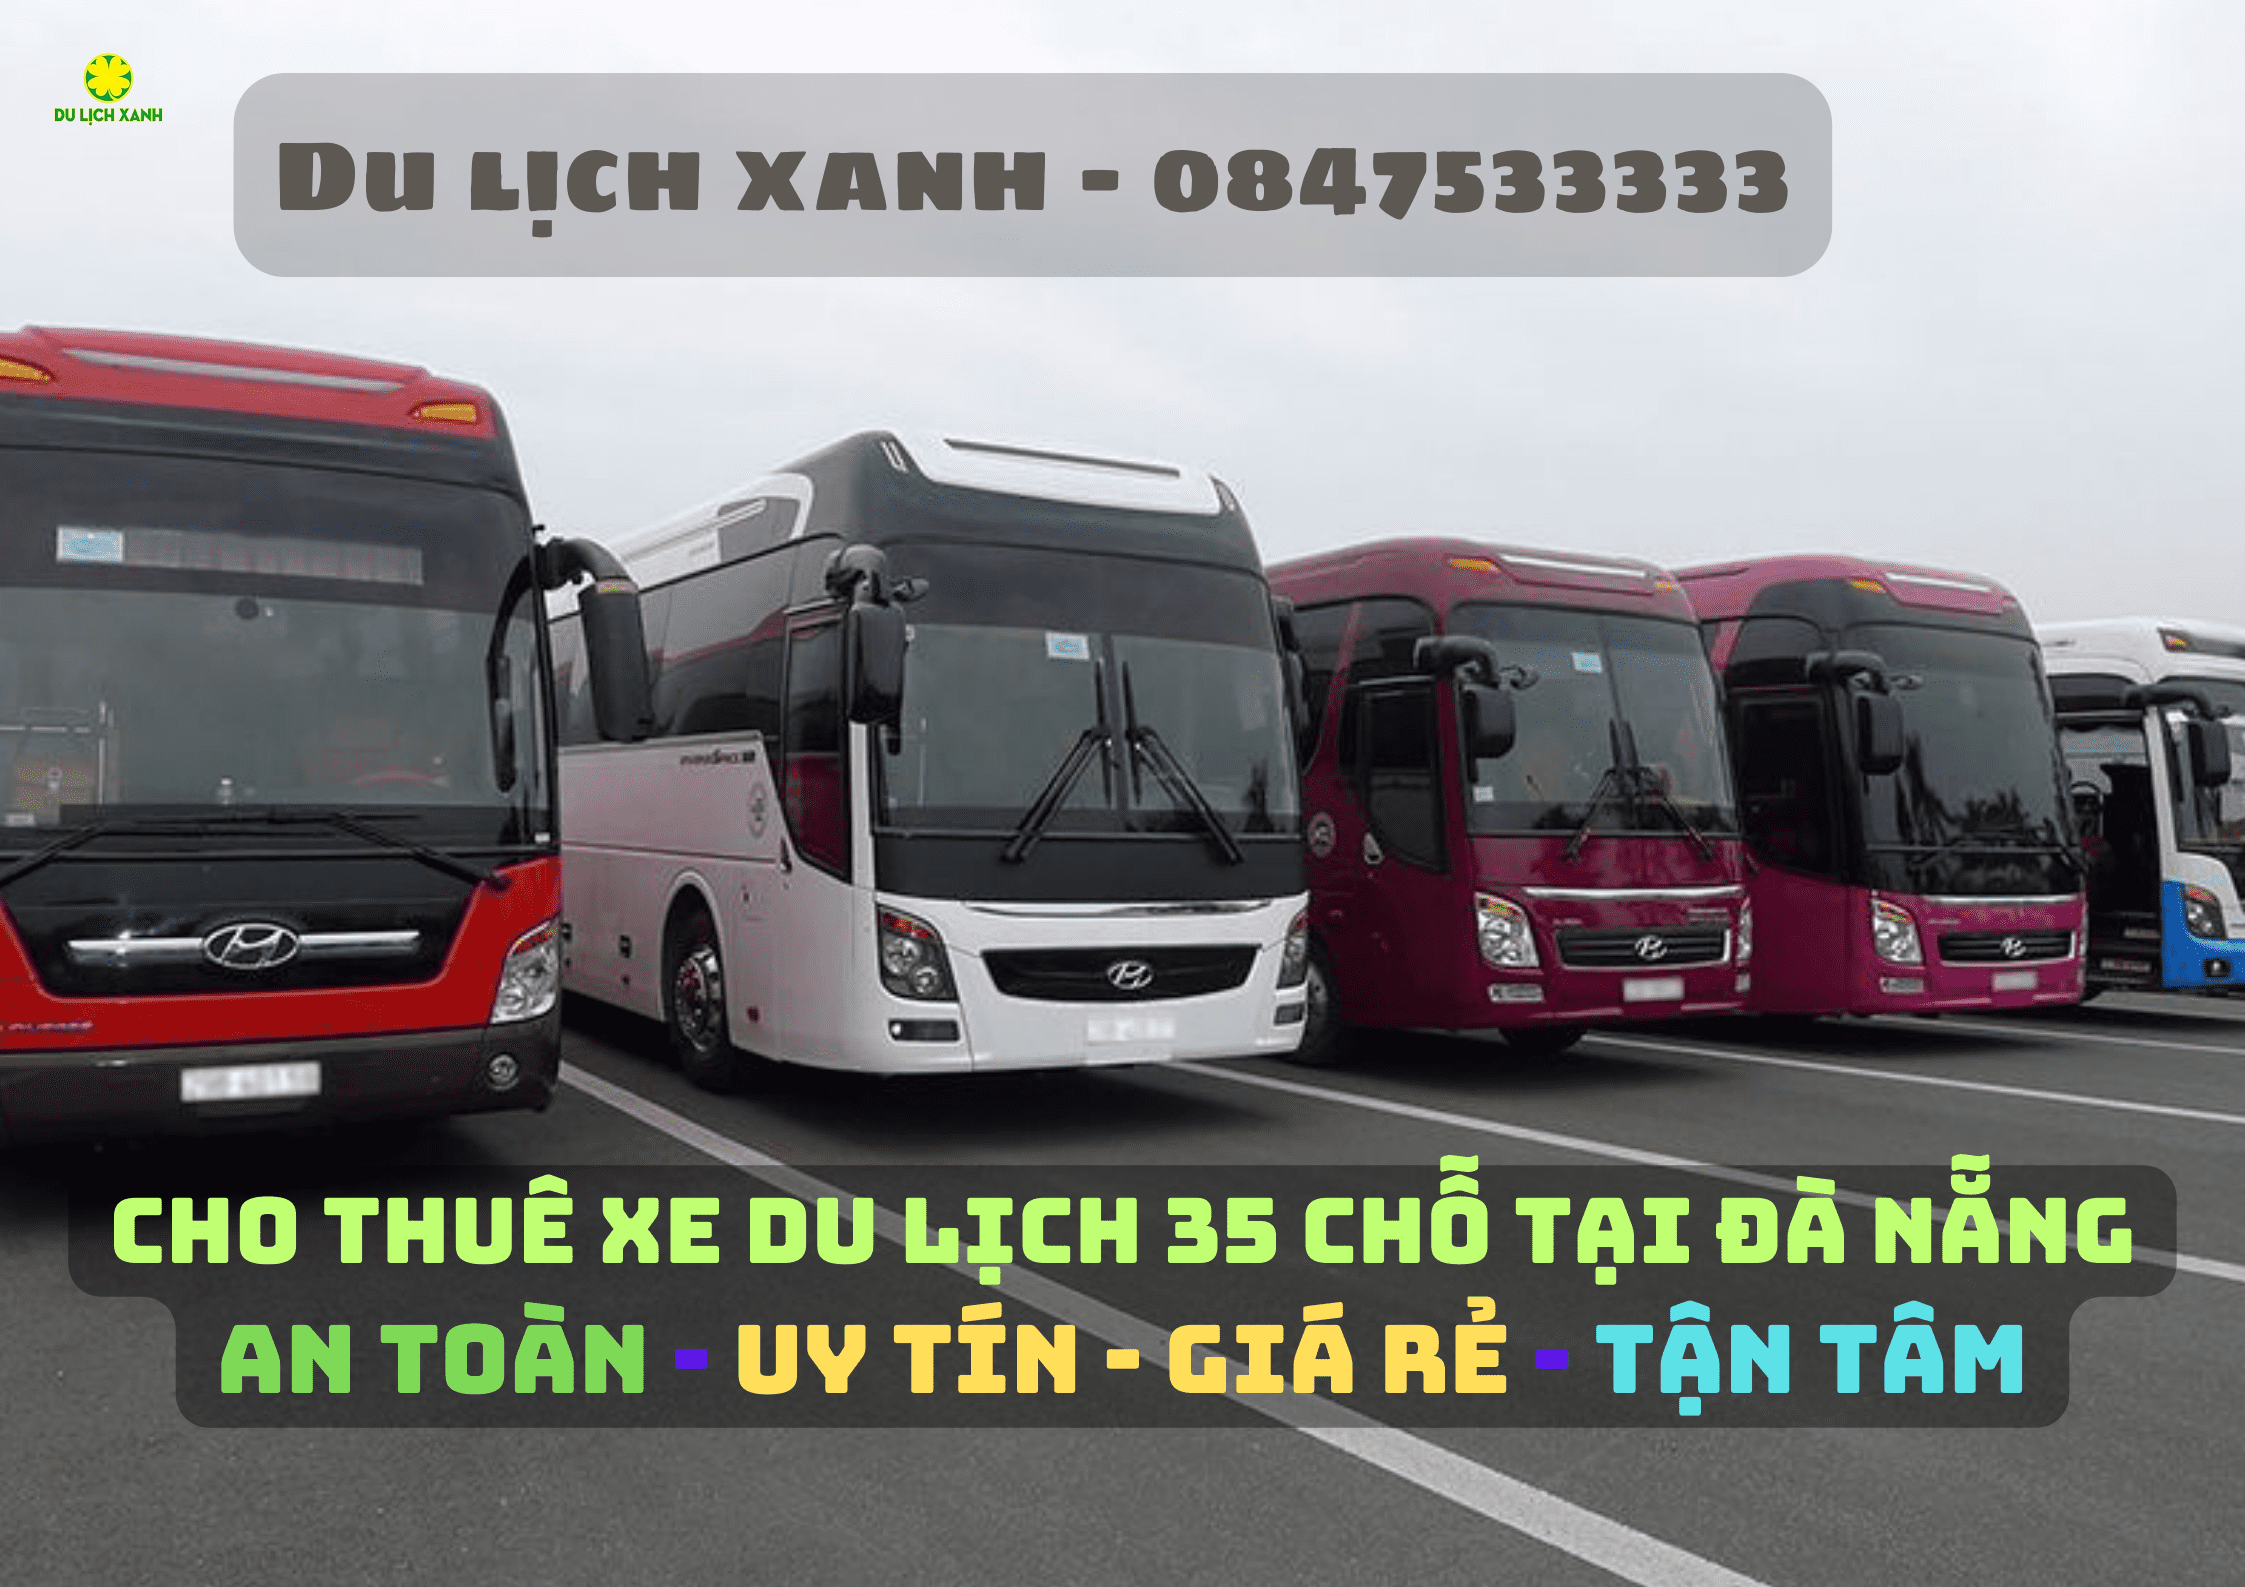 Dịch vụ cho thuê xe du lịch 35 chỗ tại Đà Nẵng